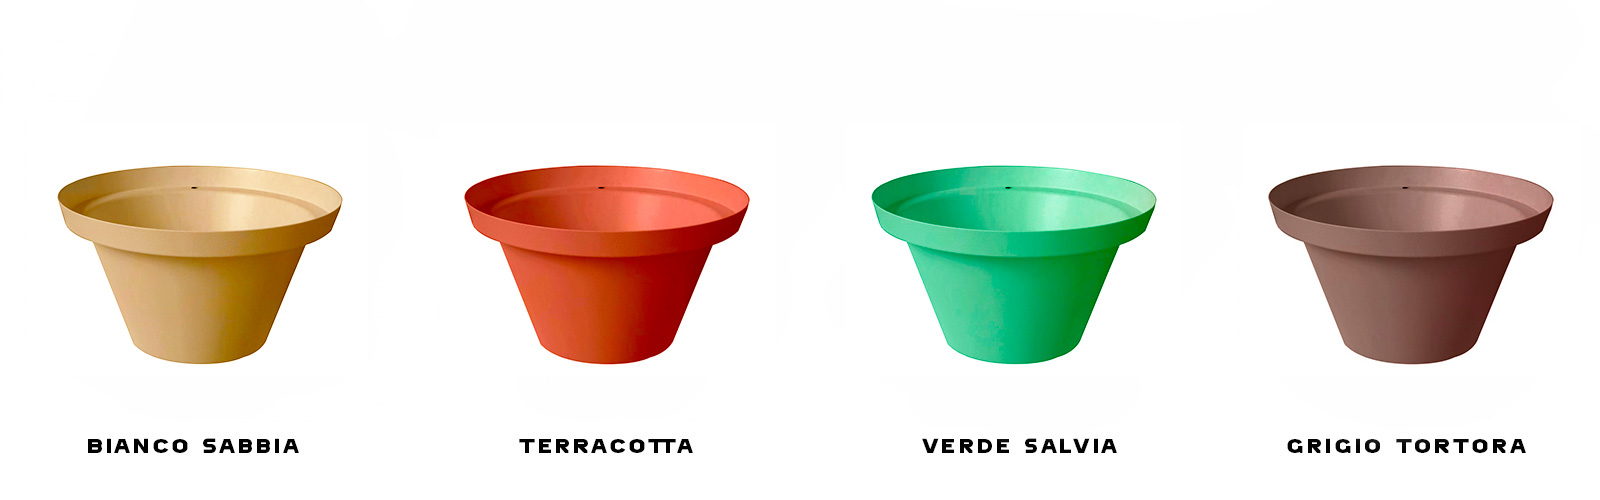 vaso lavamani da giardino 303 aquapoint in 4 diverse colorazioni